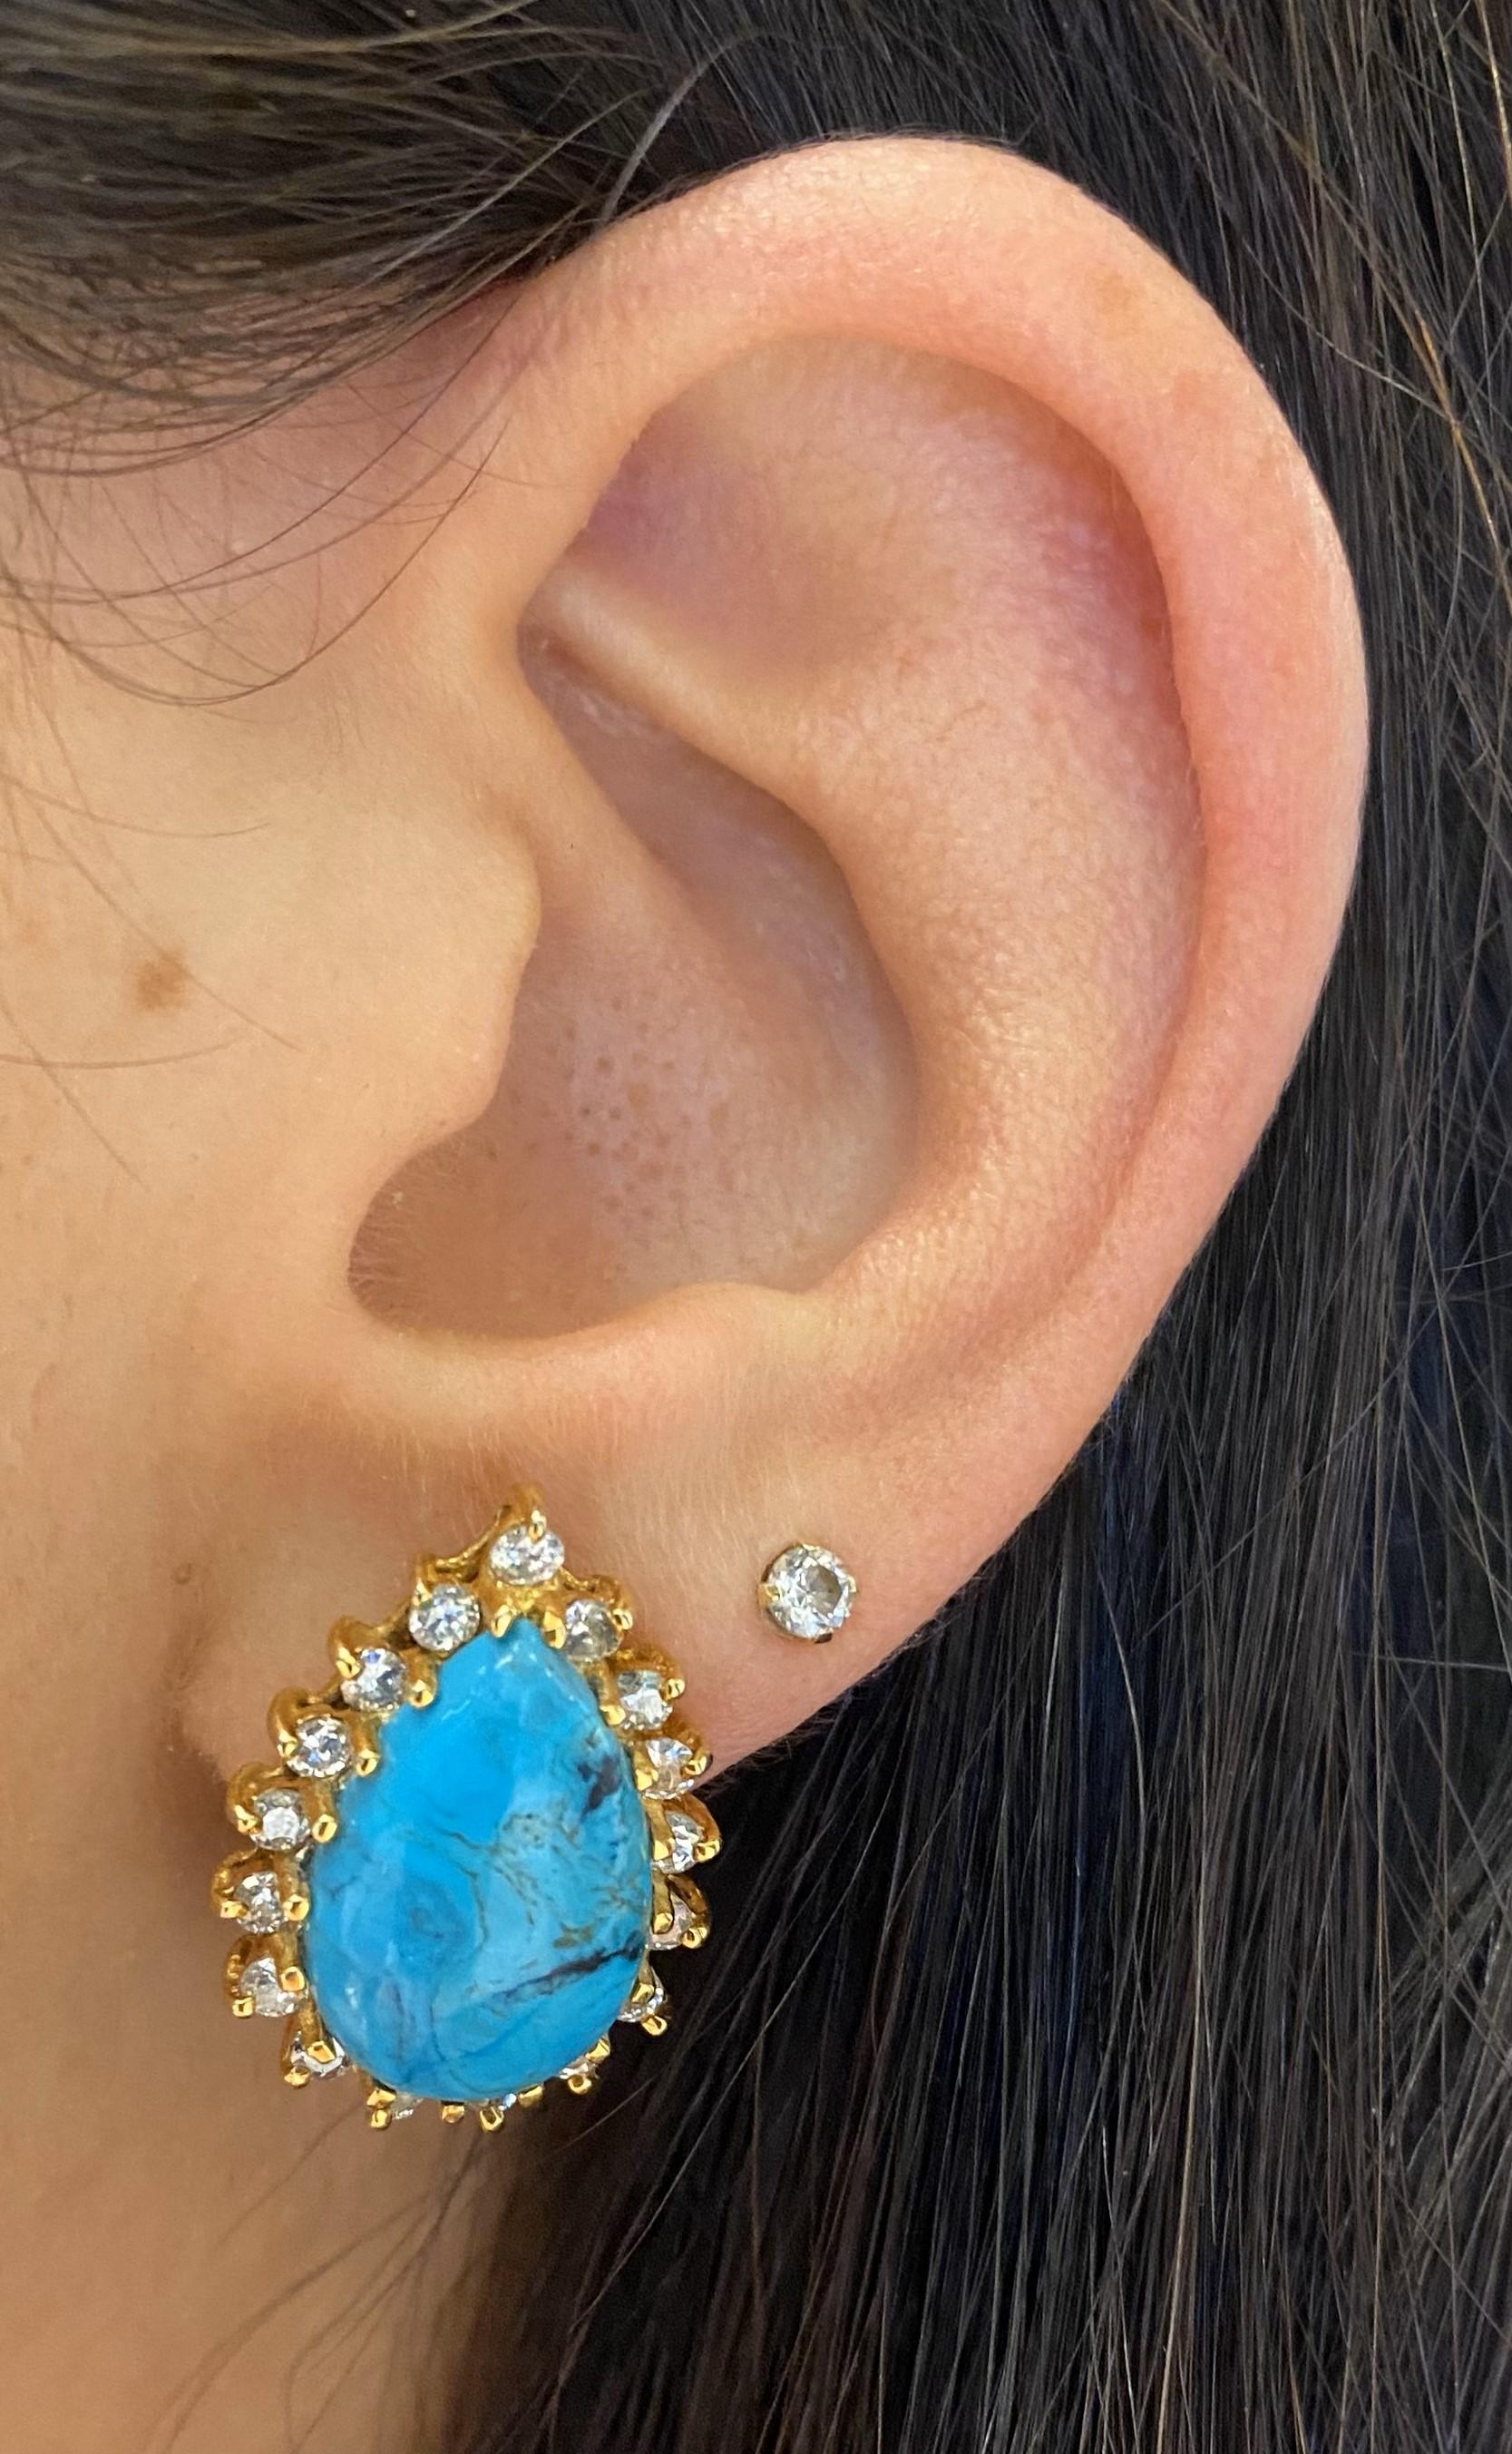 Boucles d'oreilles turquoise et diamant

Boucles d'oreilles turquoise en forme de poire serties de 34 diamants de taille ronde

Poids approximatif des diamants combinés : 1 carat
Longueur approximative : 1 pouce 
Type de dos : dos poussé